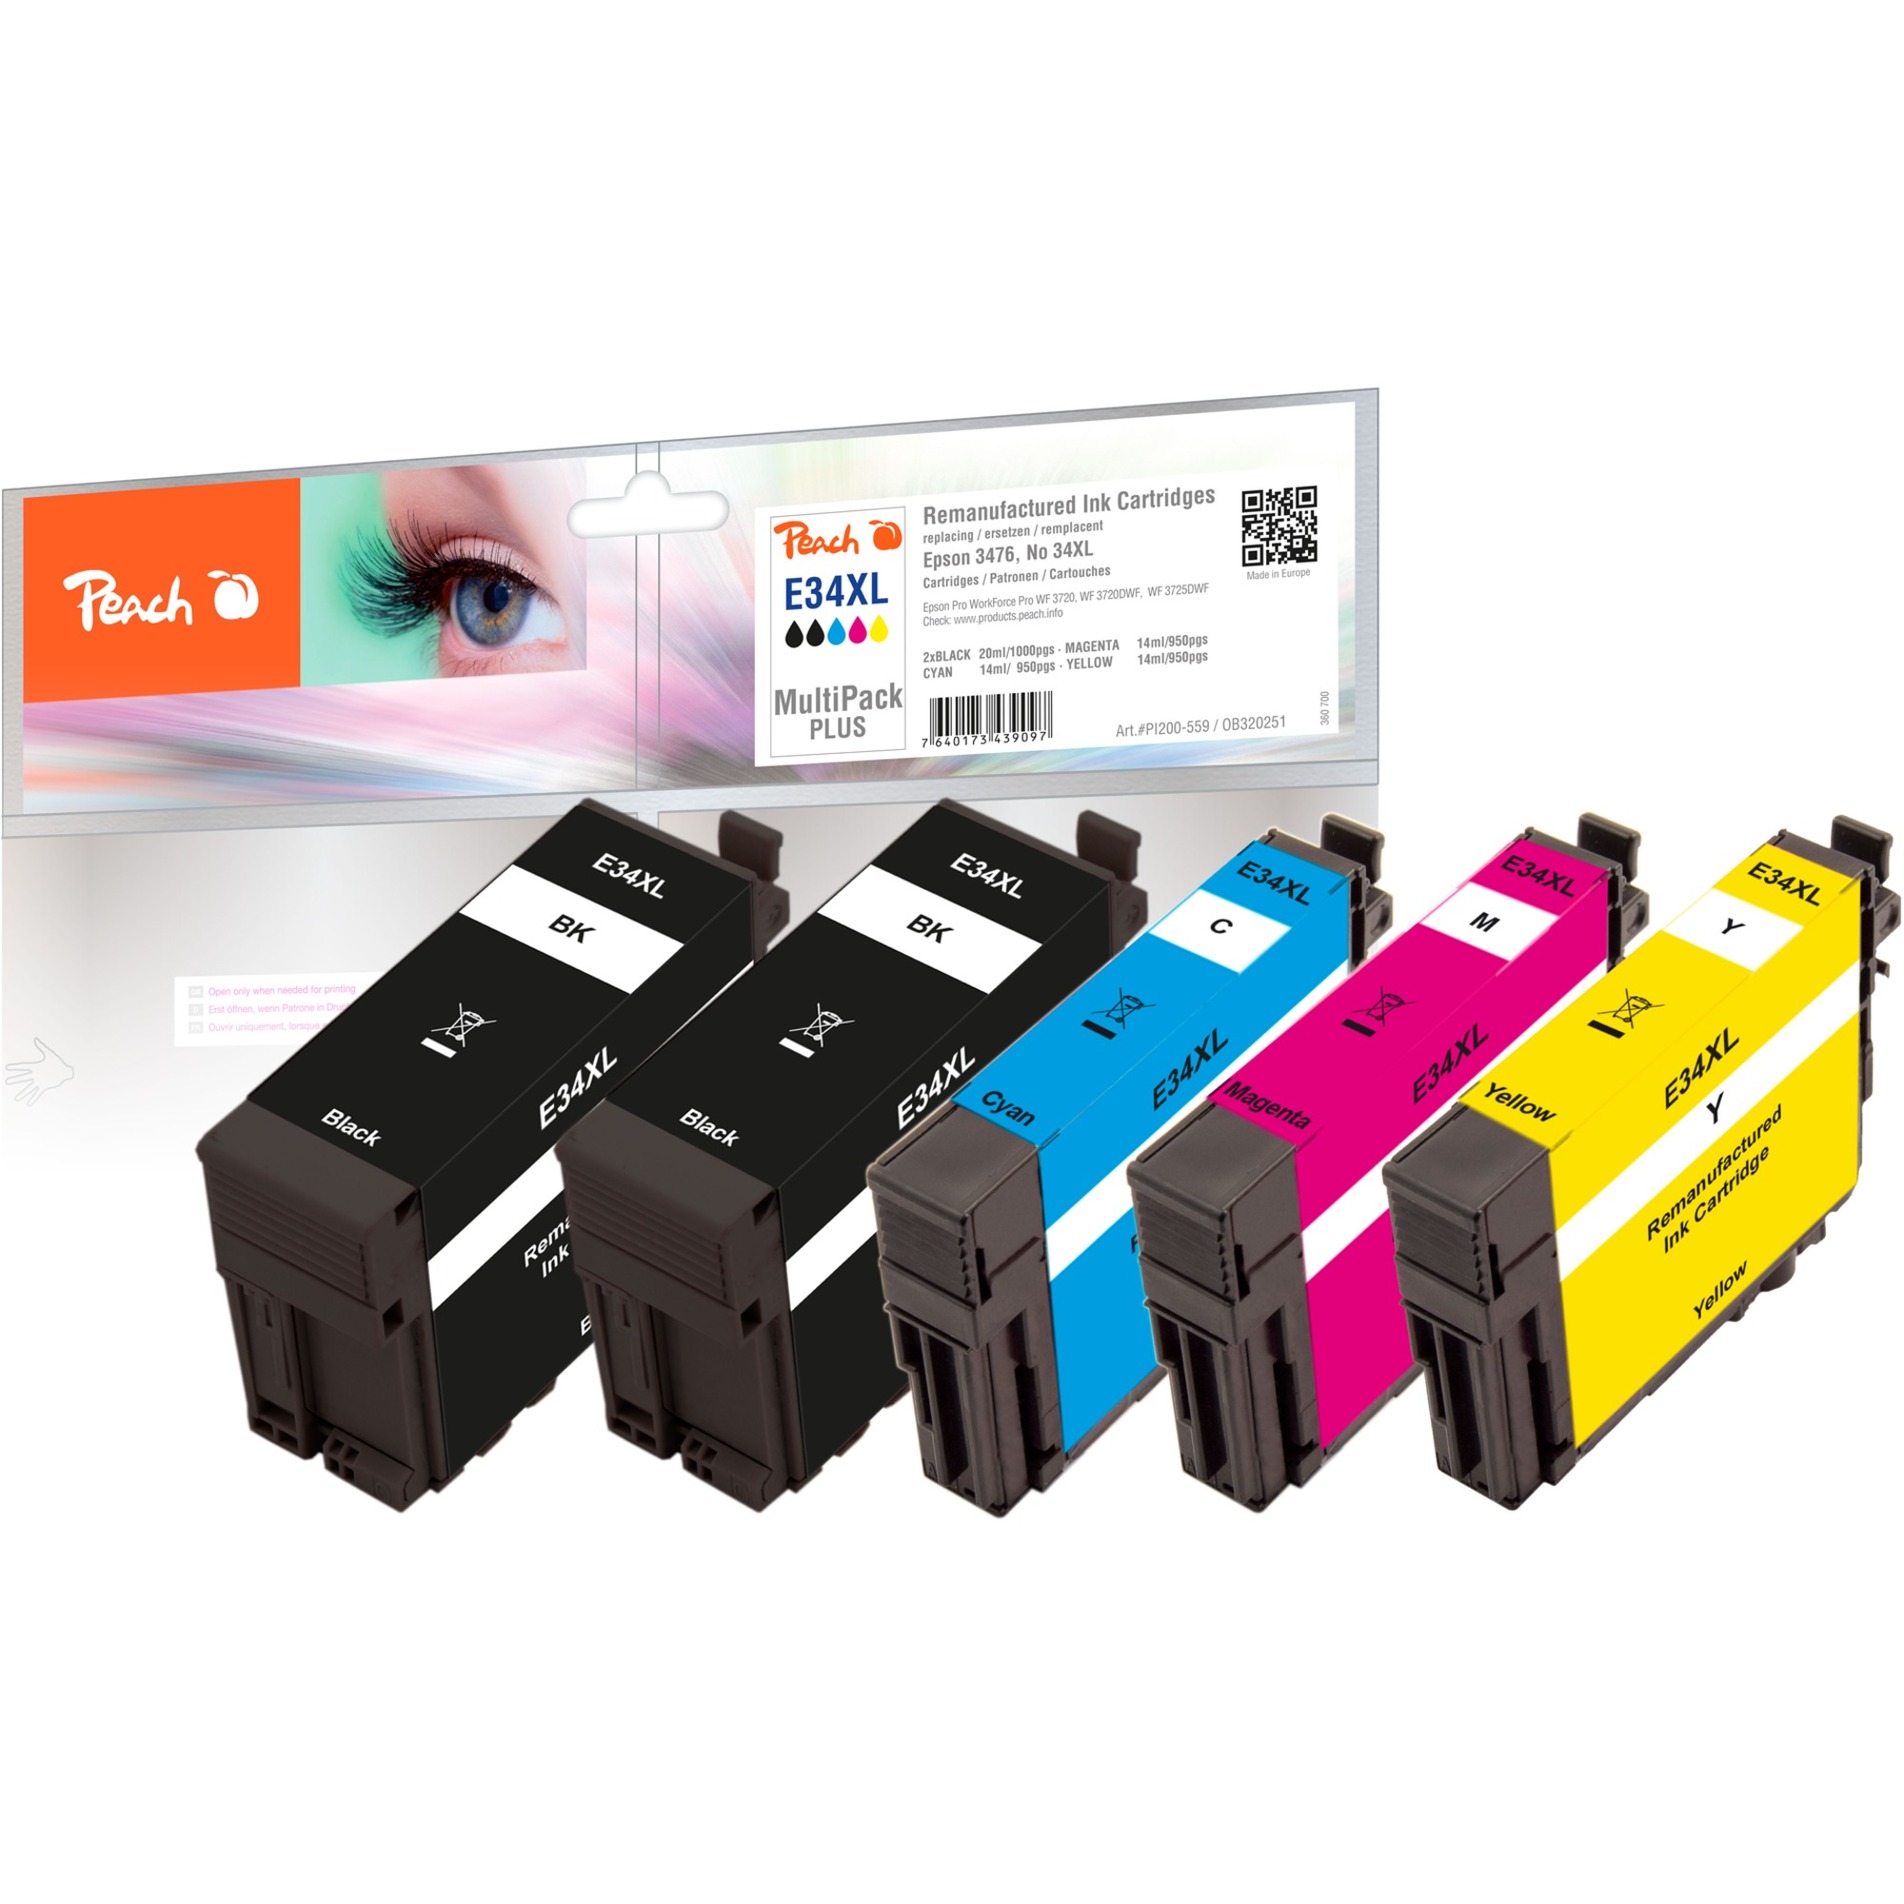 Image of Alternate - Tinte Spar Pack Plus 320251 online einkaufen bei Alternate